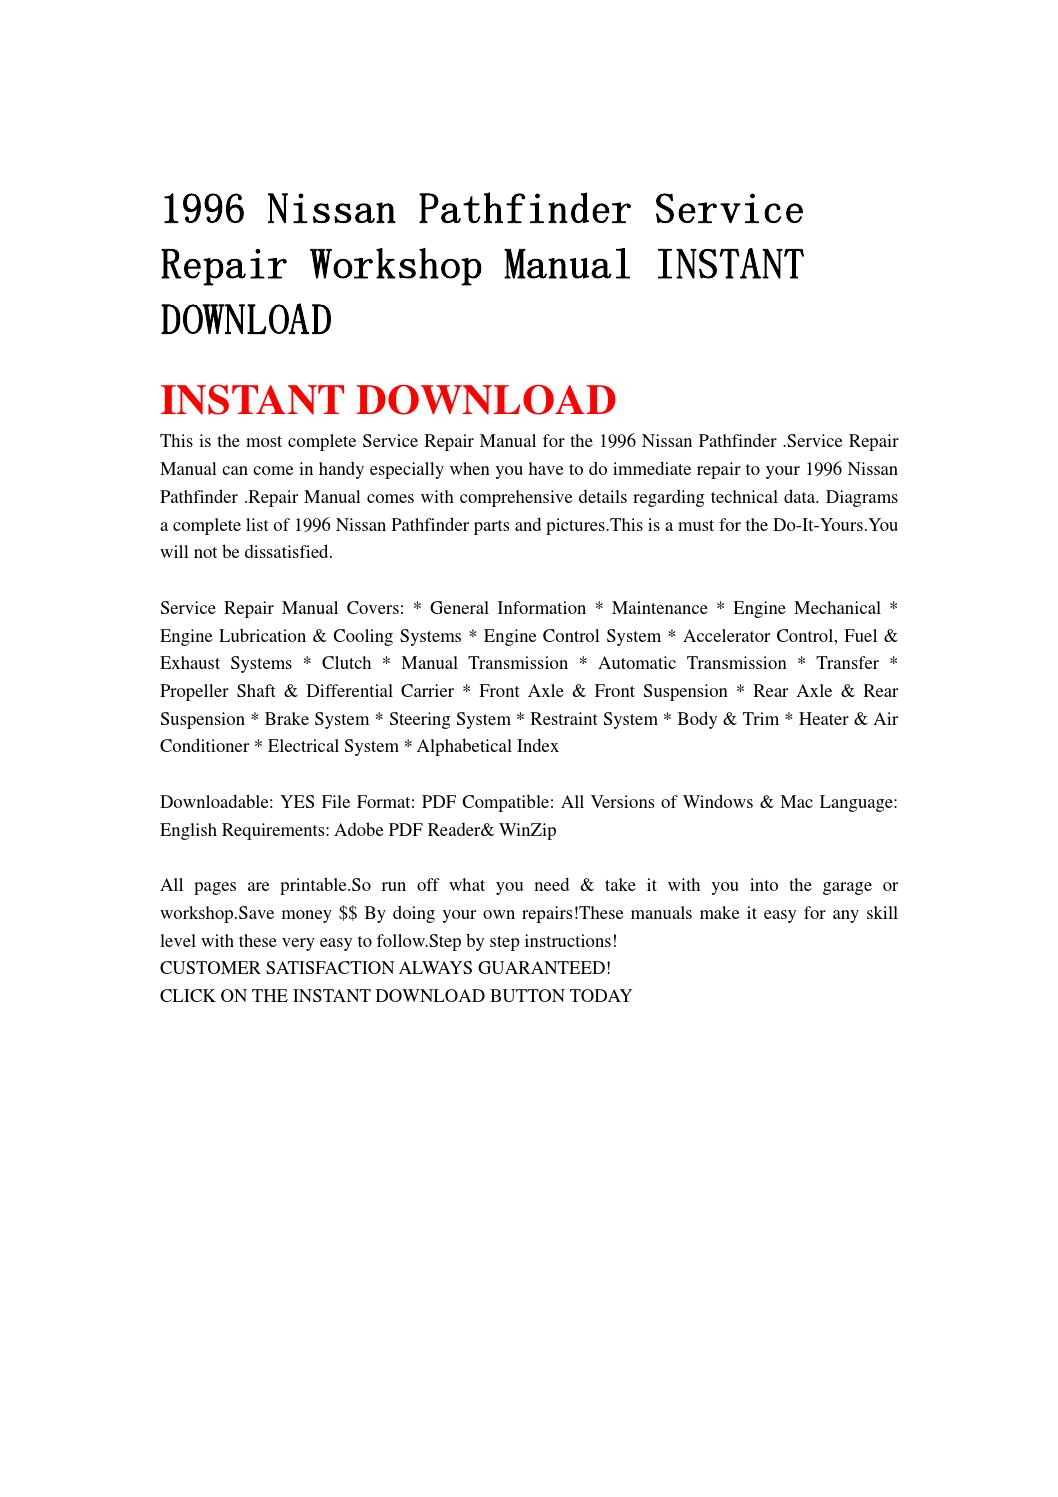 1996 nissan pathfinder repair manual pdf